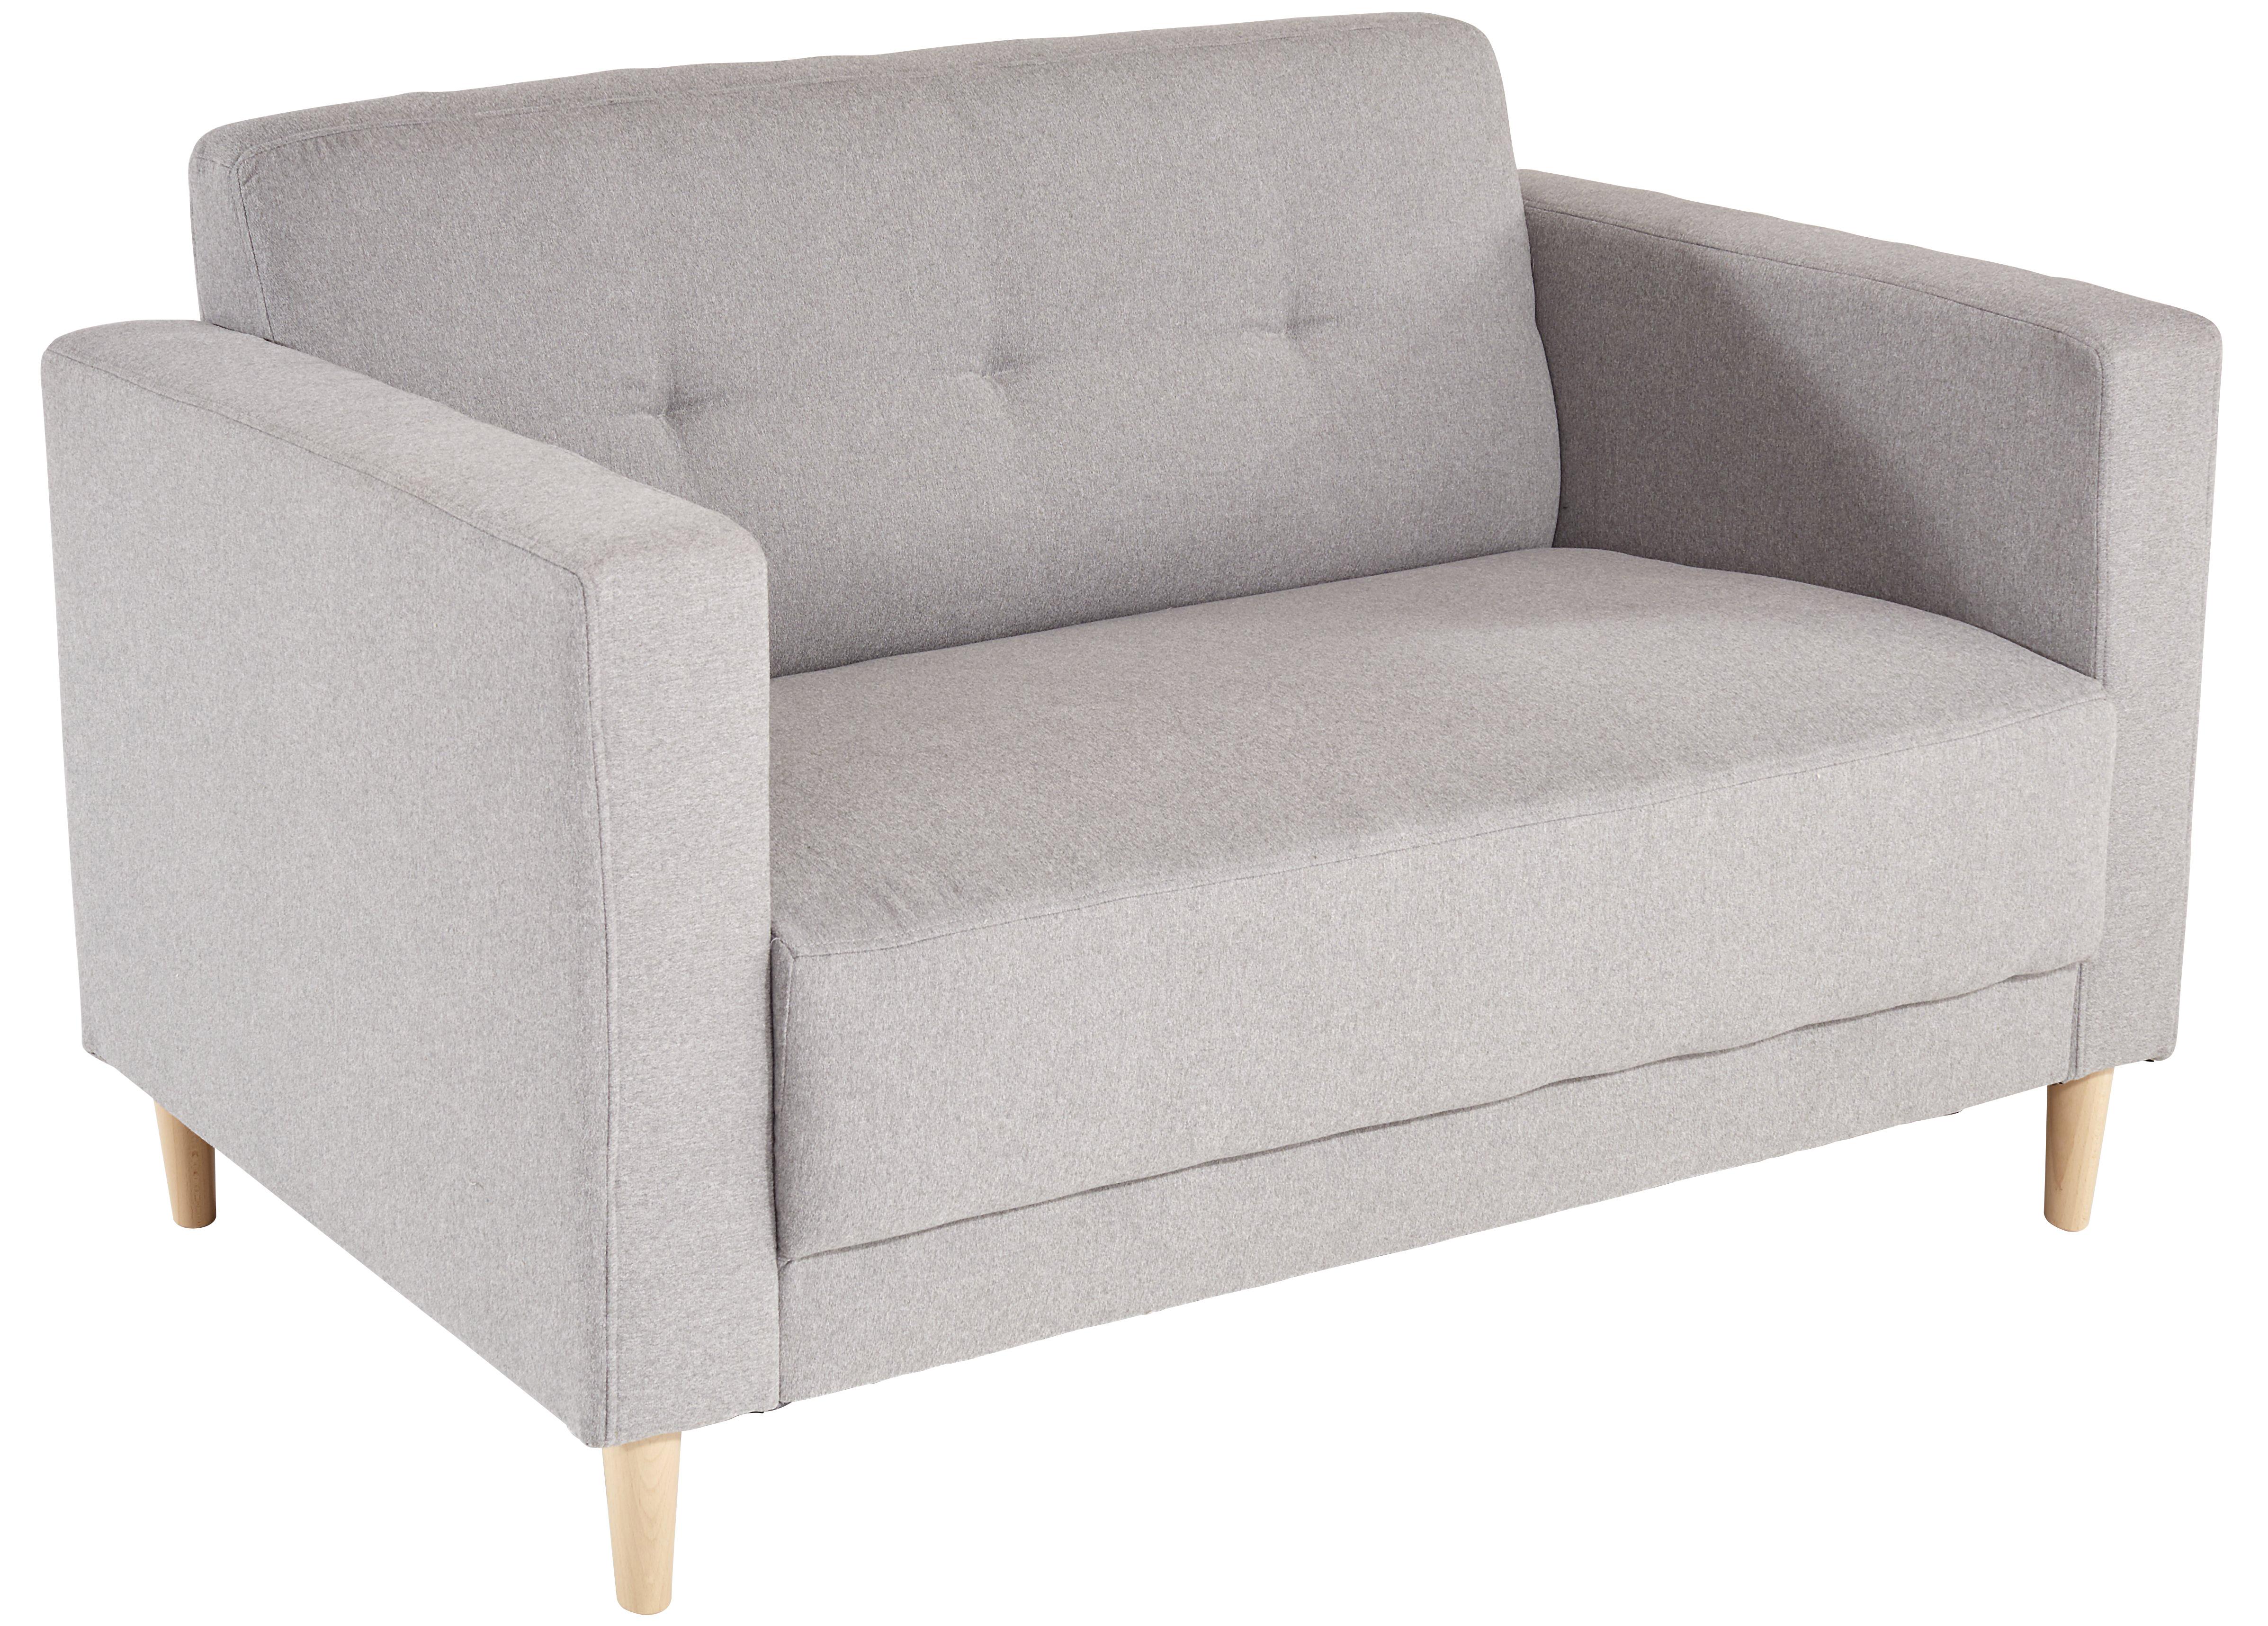 Zweisitzer-Sofa Geneve, Webstoff - Hellgrau/Naturfarben, MODERN, Textil (148/81/75cm)